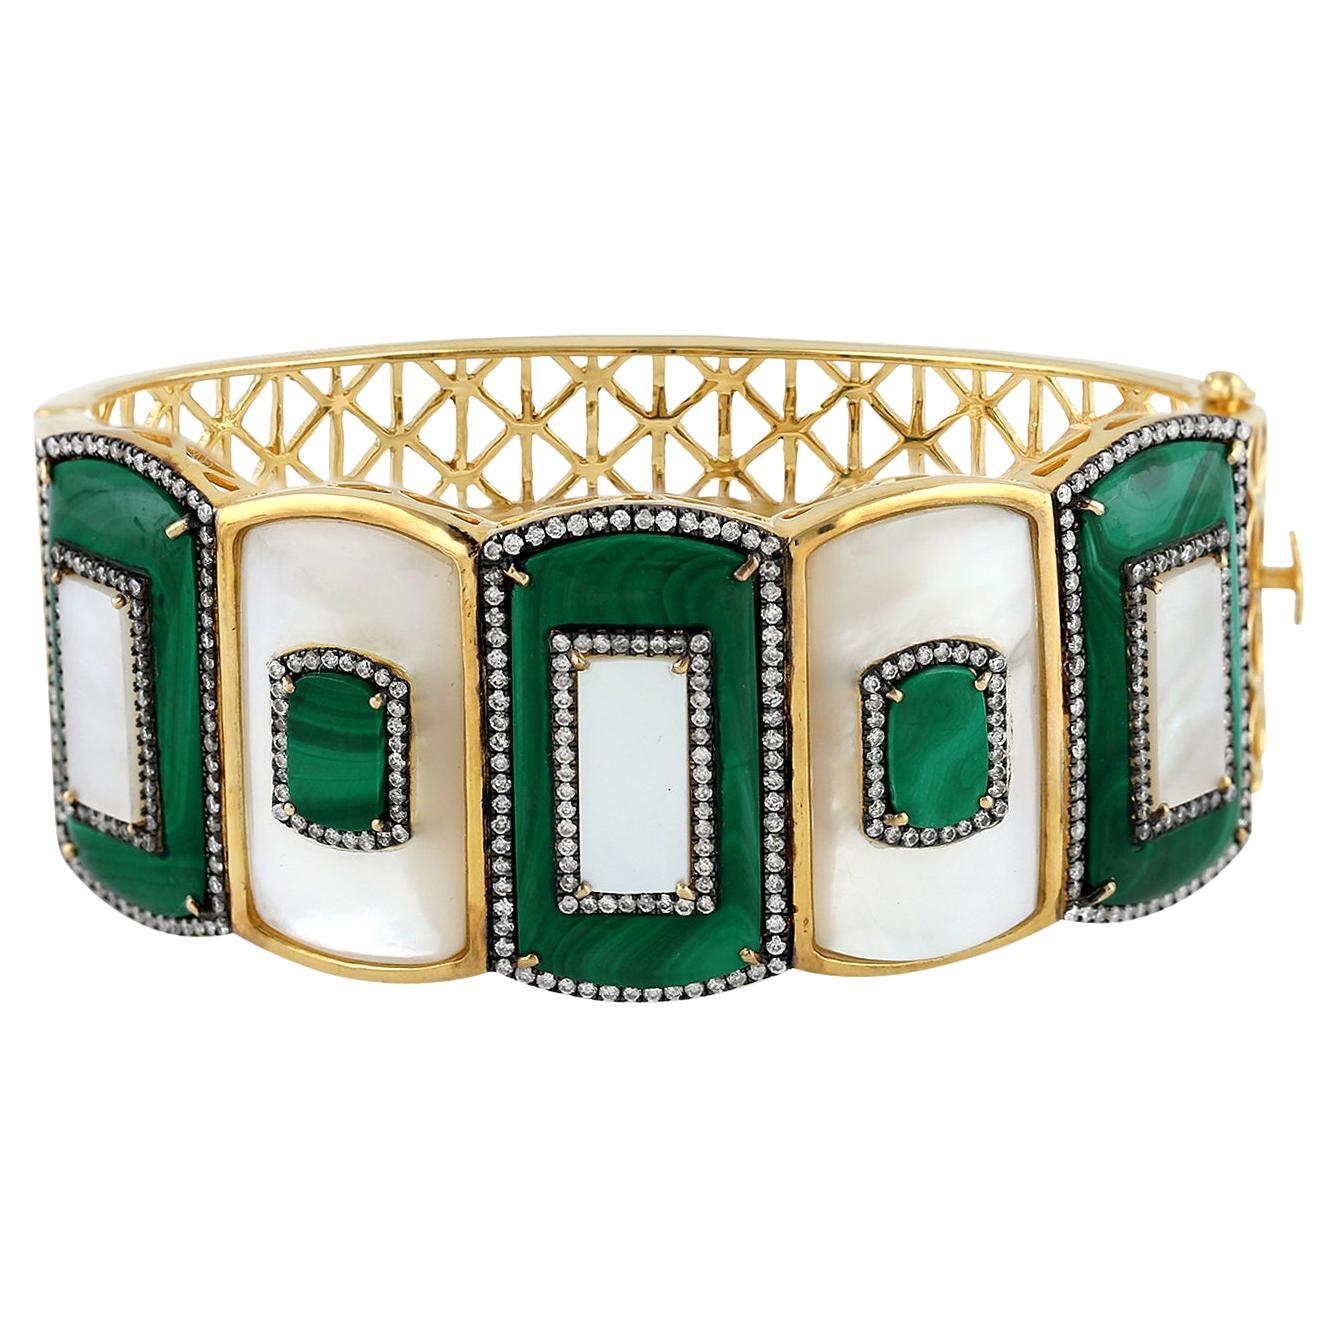 Bracelet jonc en or 18 carats, malachite et perles avec motif filigrane accentué par des diamants